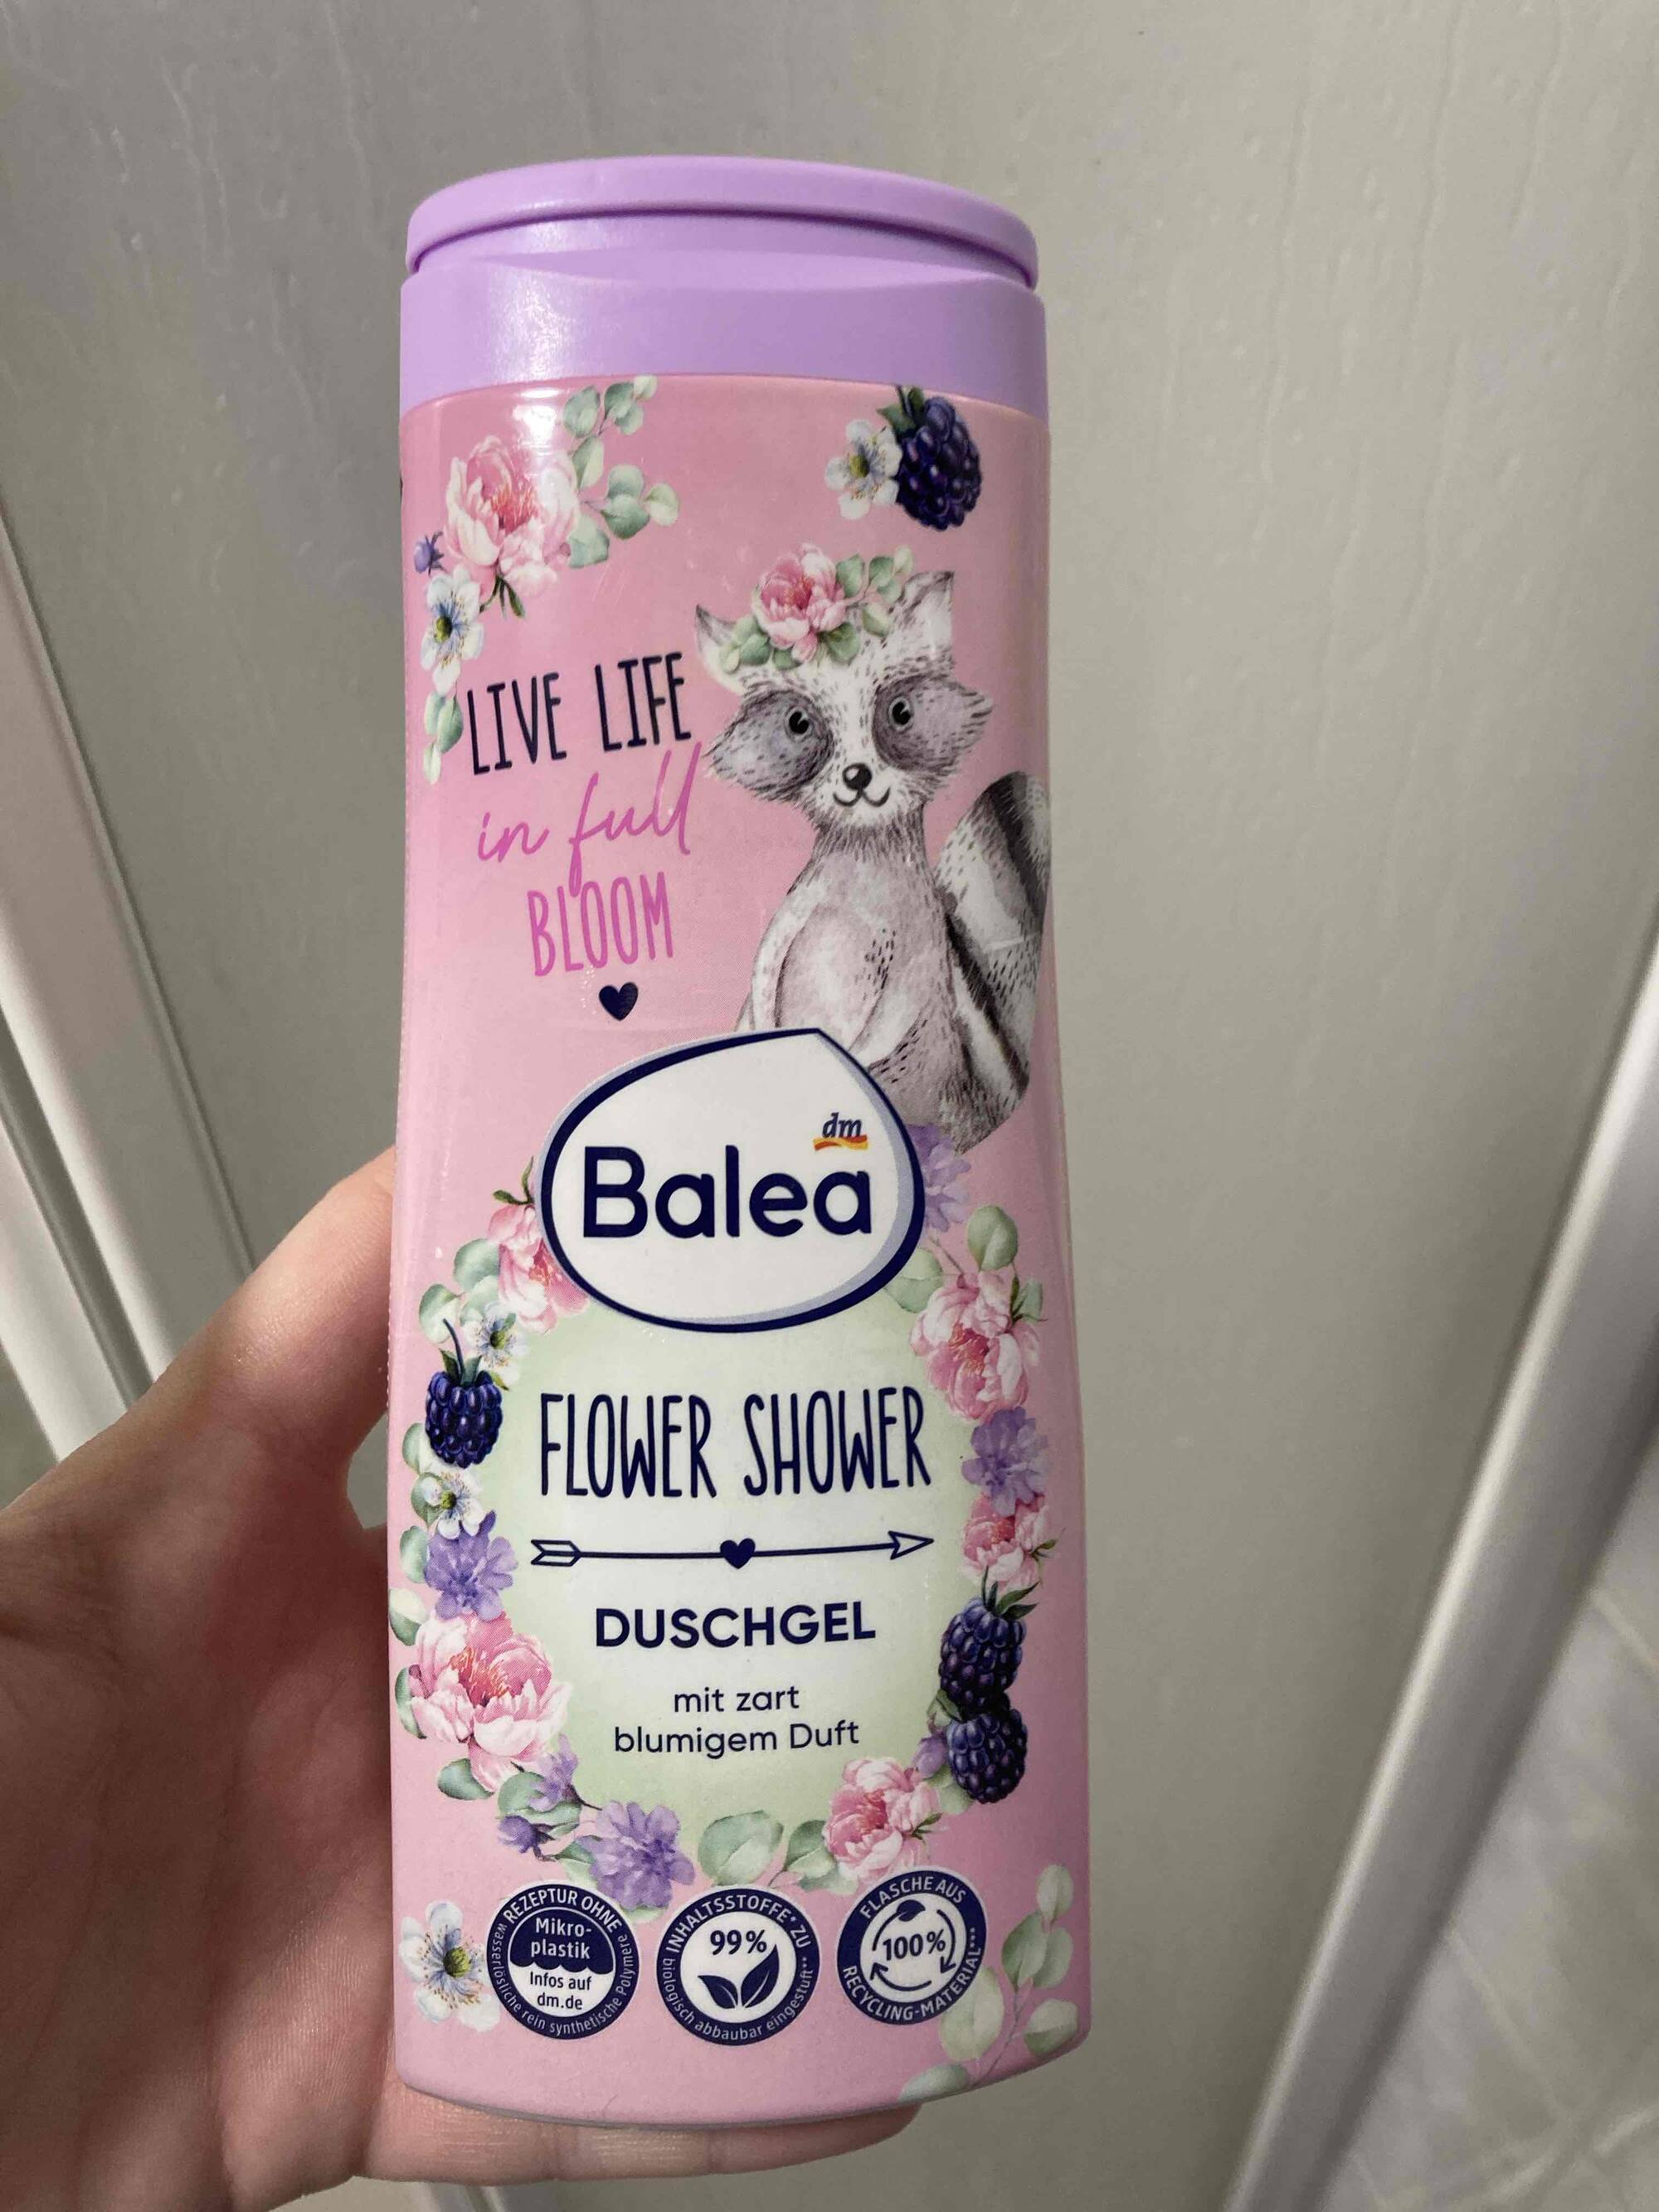 BALEA - Flower shower - Duschgel 